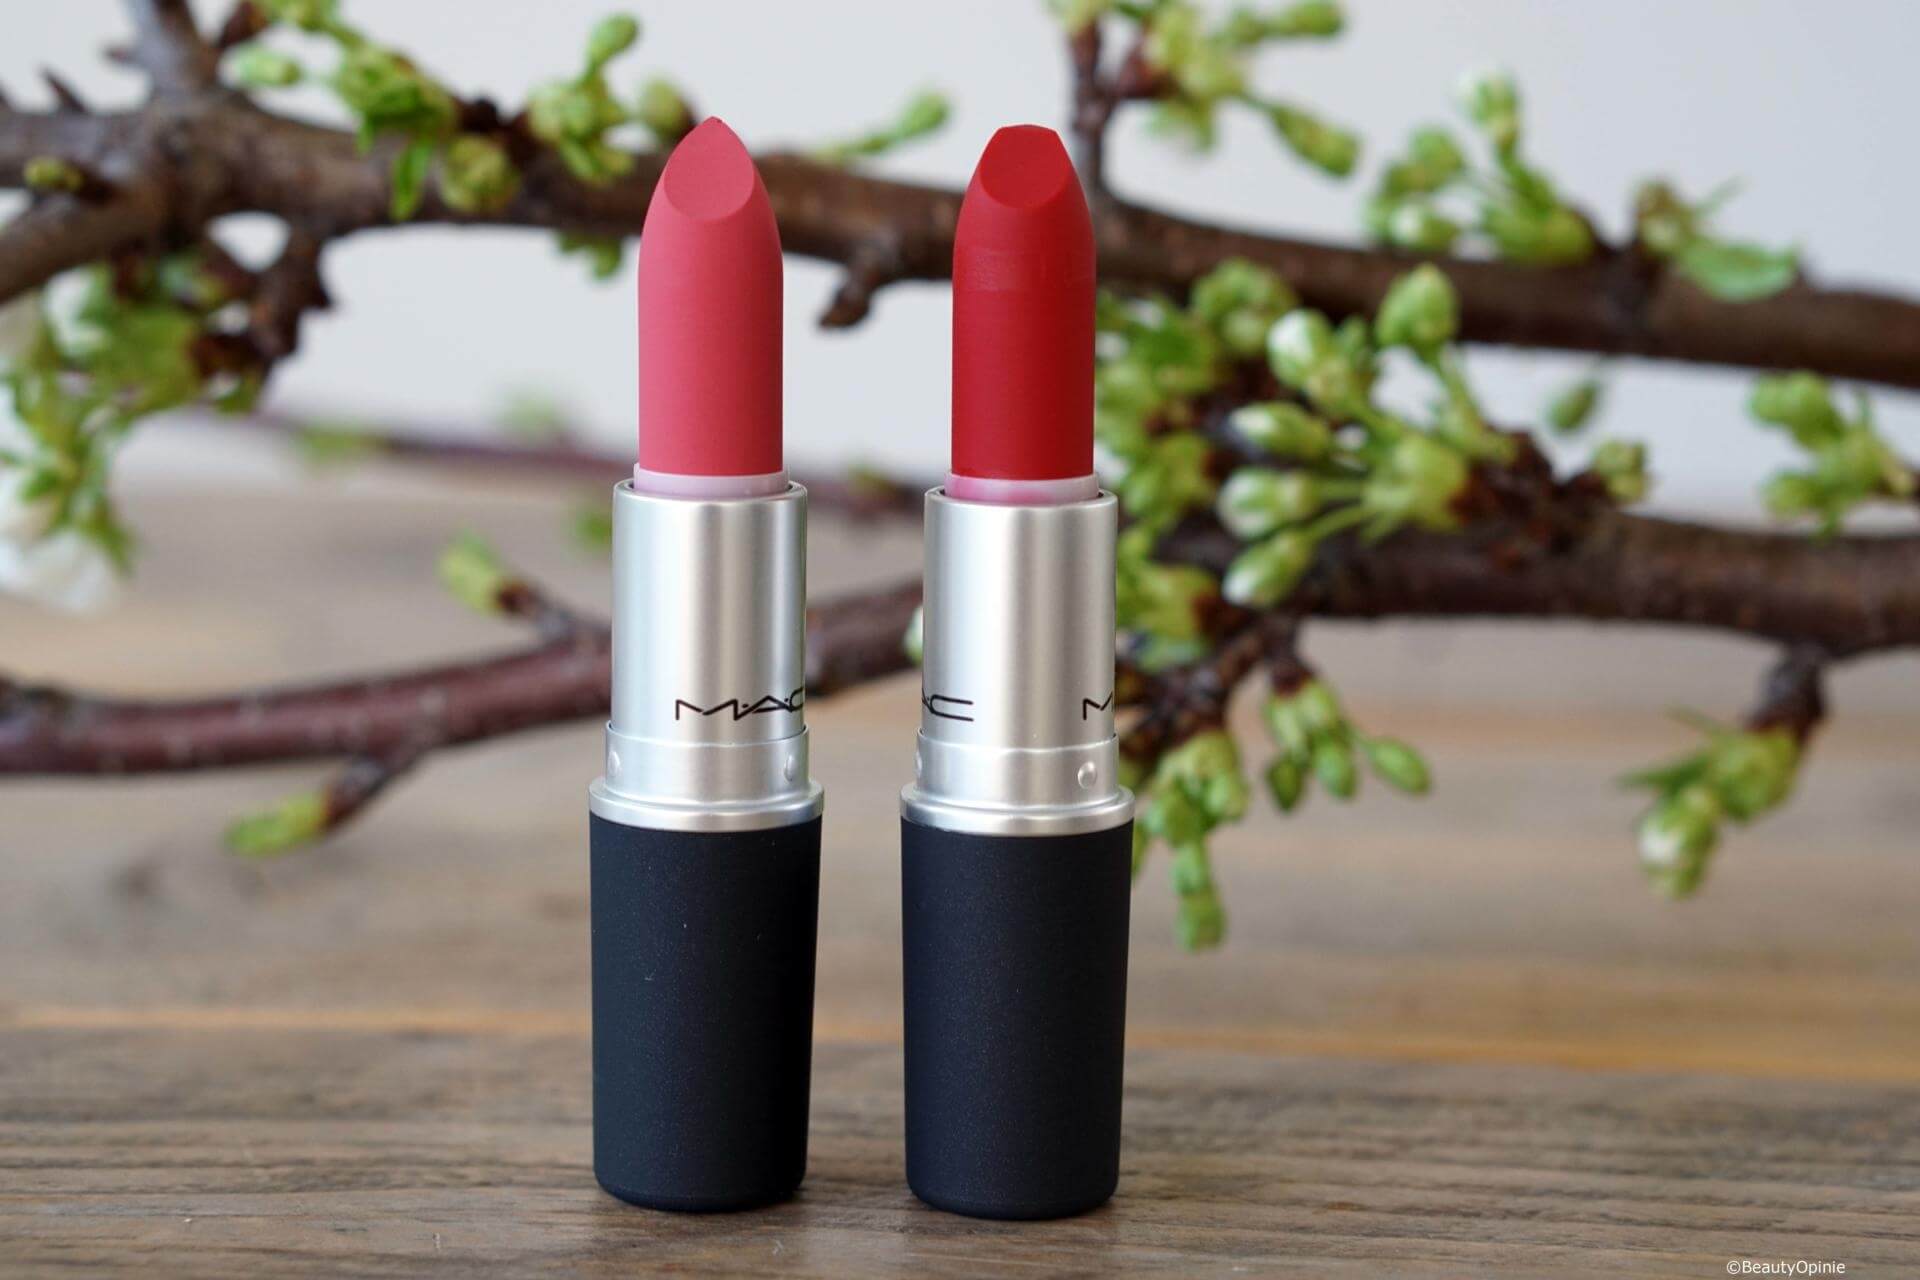 MAC Powder Kiss lipsticks